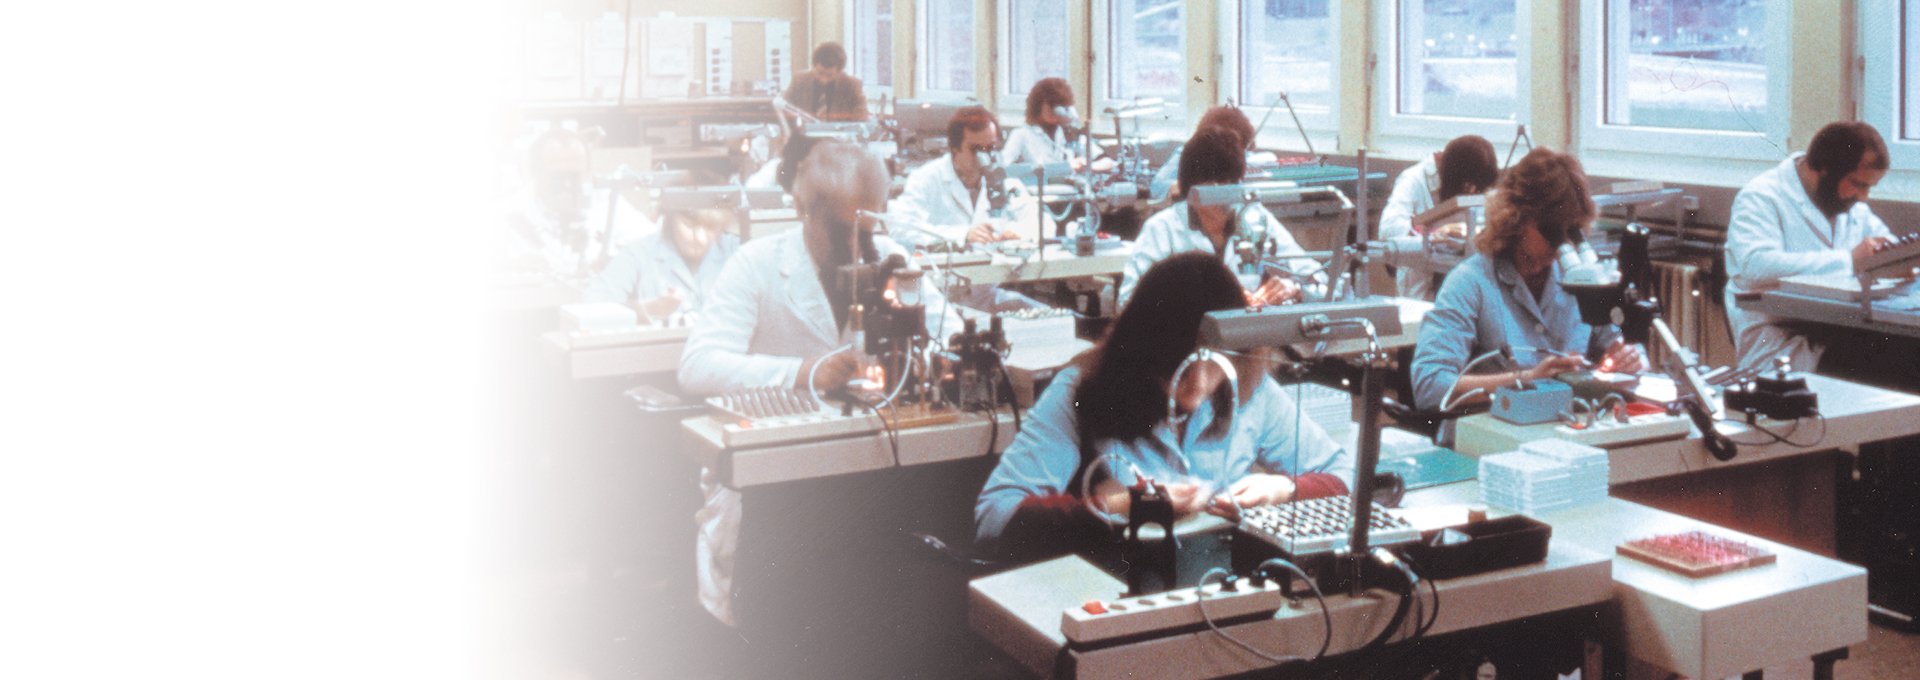 Oude foto van een kamer vol toegewijde werknemers in labjassen die werken aan de productie van Bernafon hoortoestellen, 1989